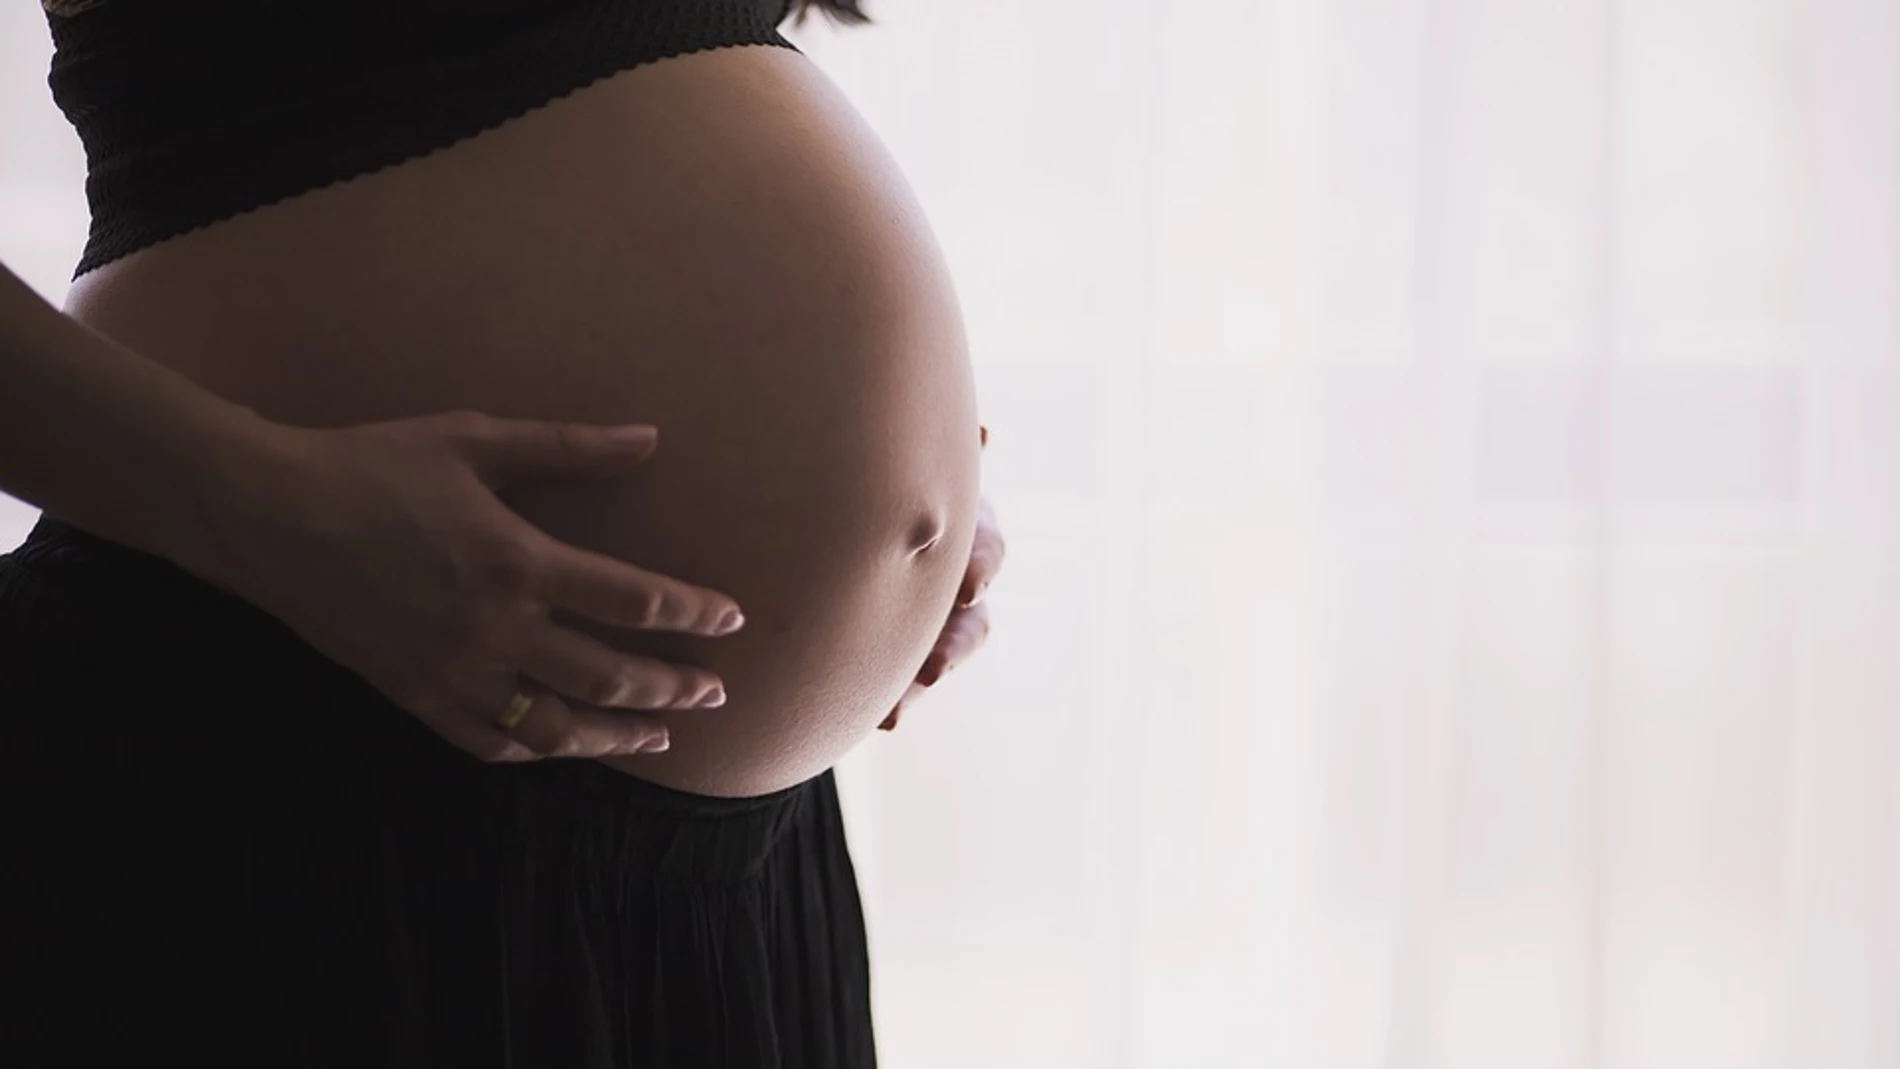 El estudio ha confirmado que el riesgo de gripe aumenta en las embarazadas / Pixabay